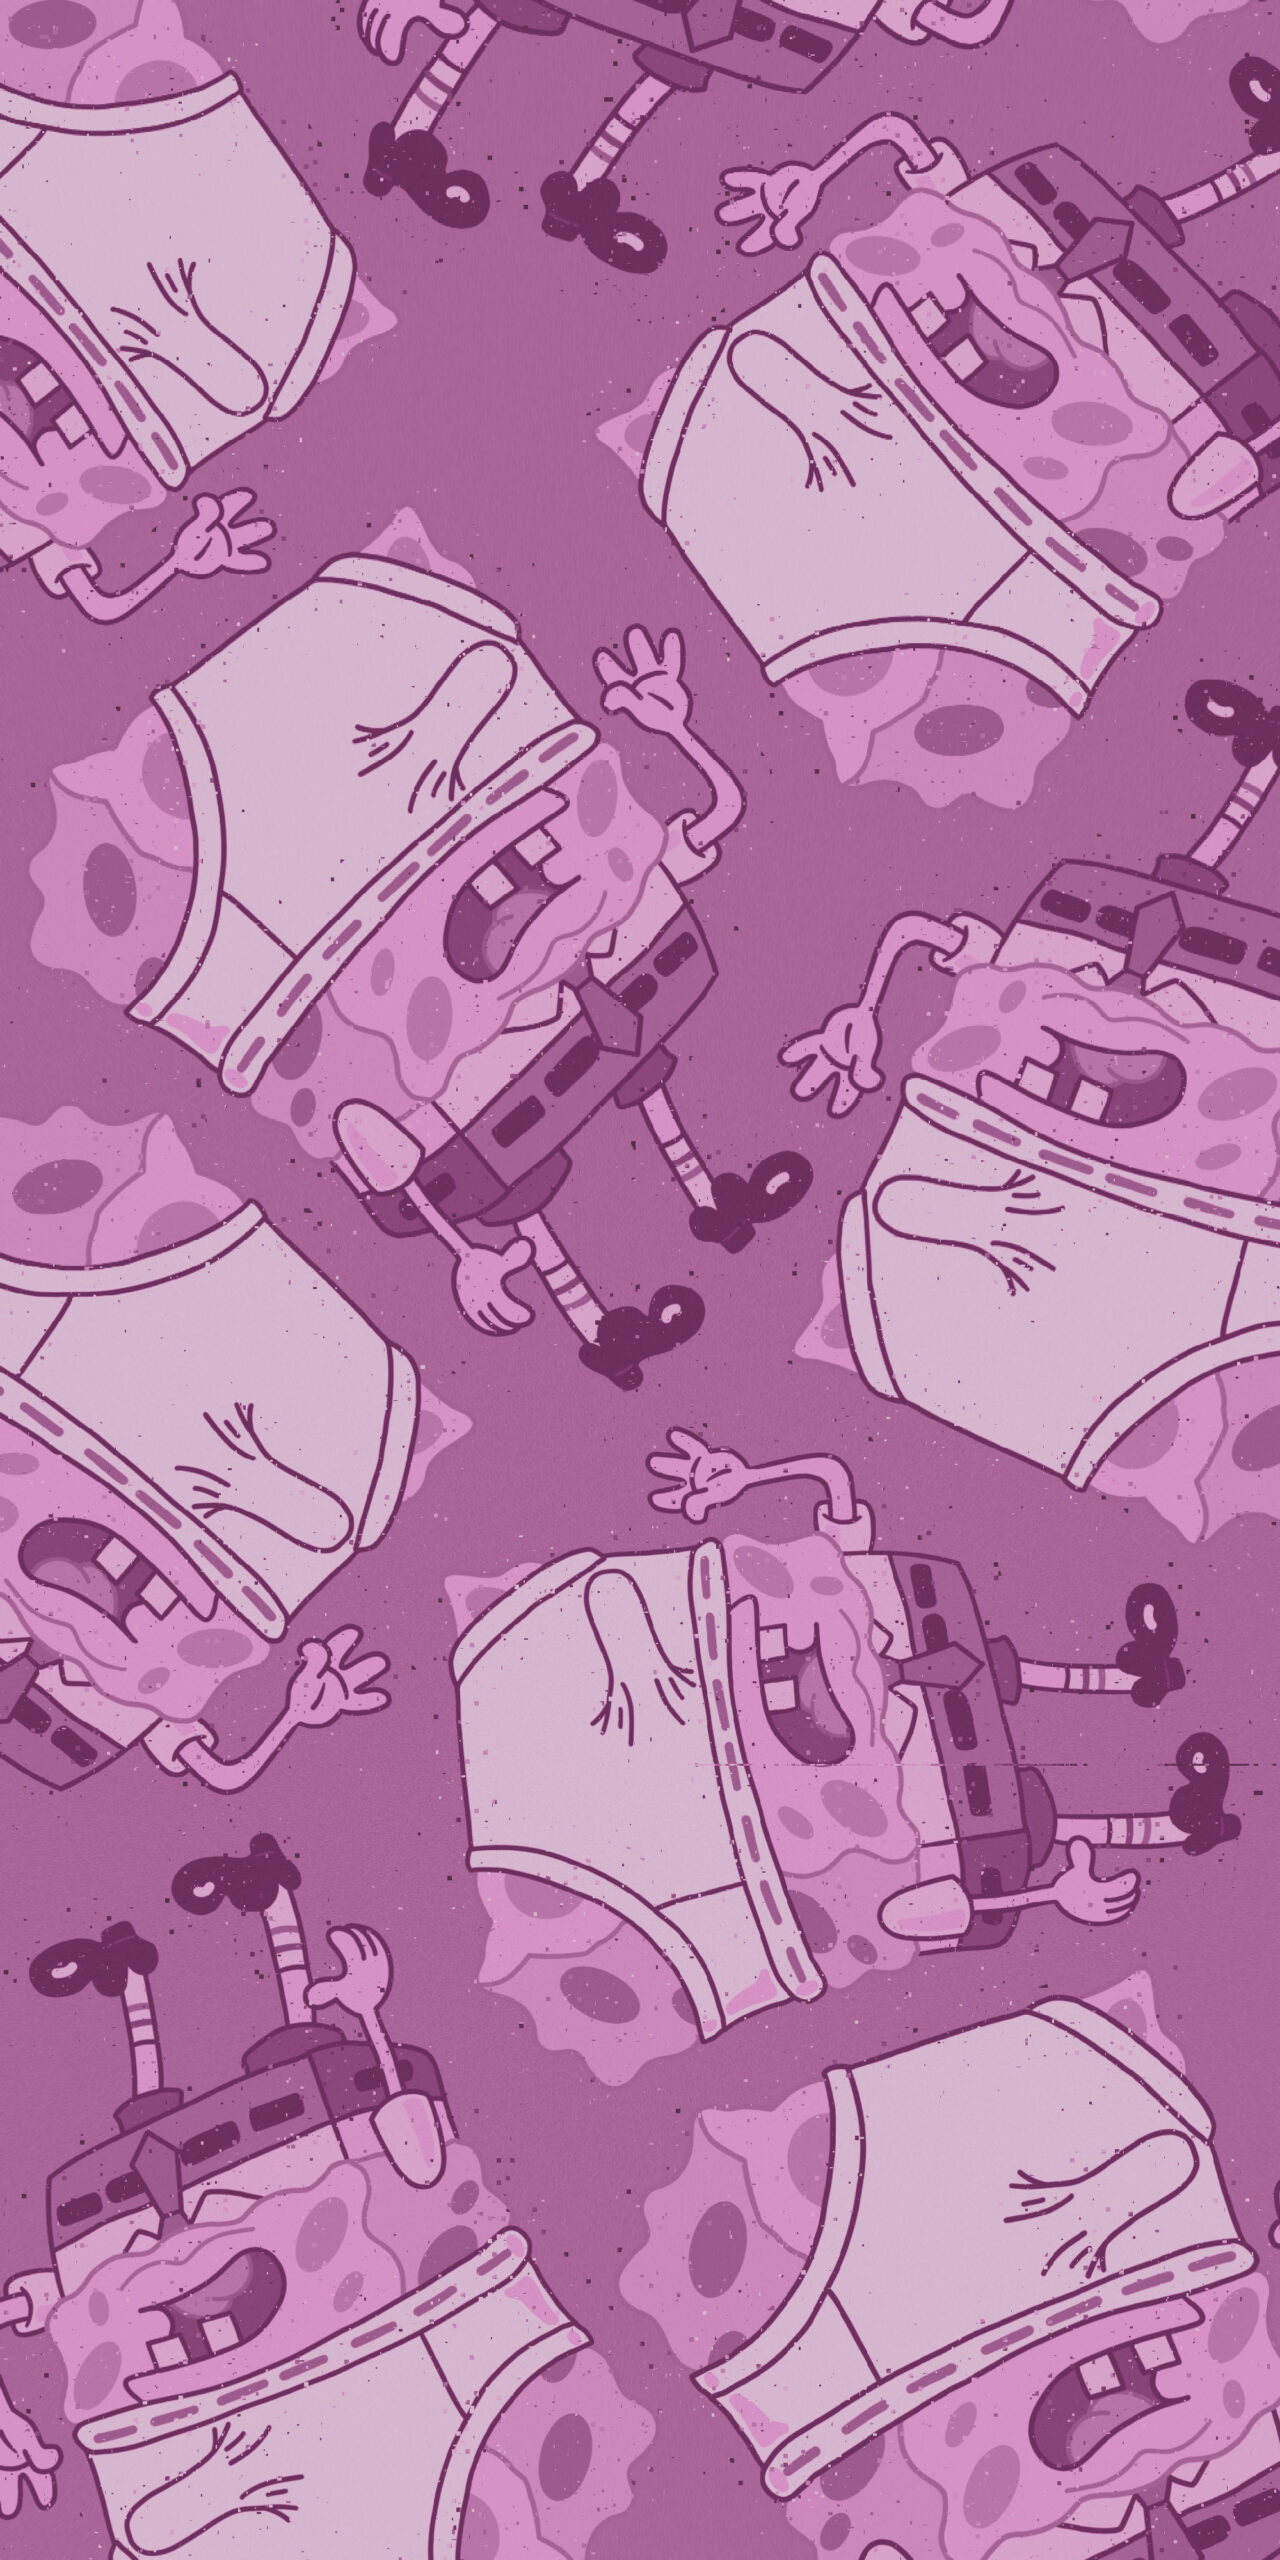 spongebob underwear on head purple background wallpaper